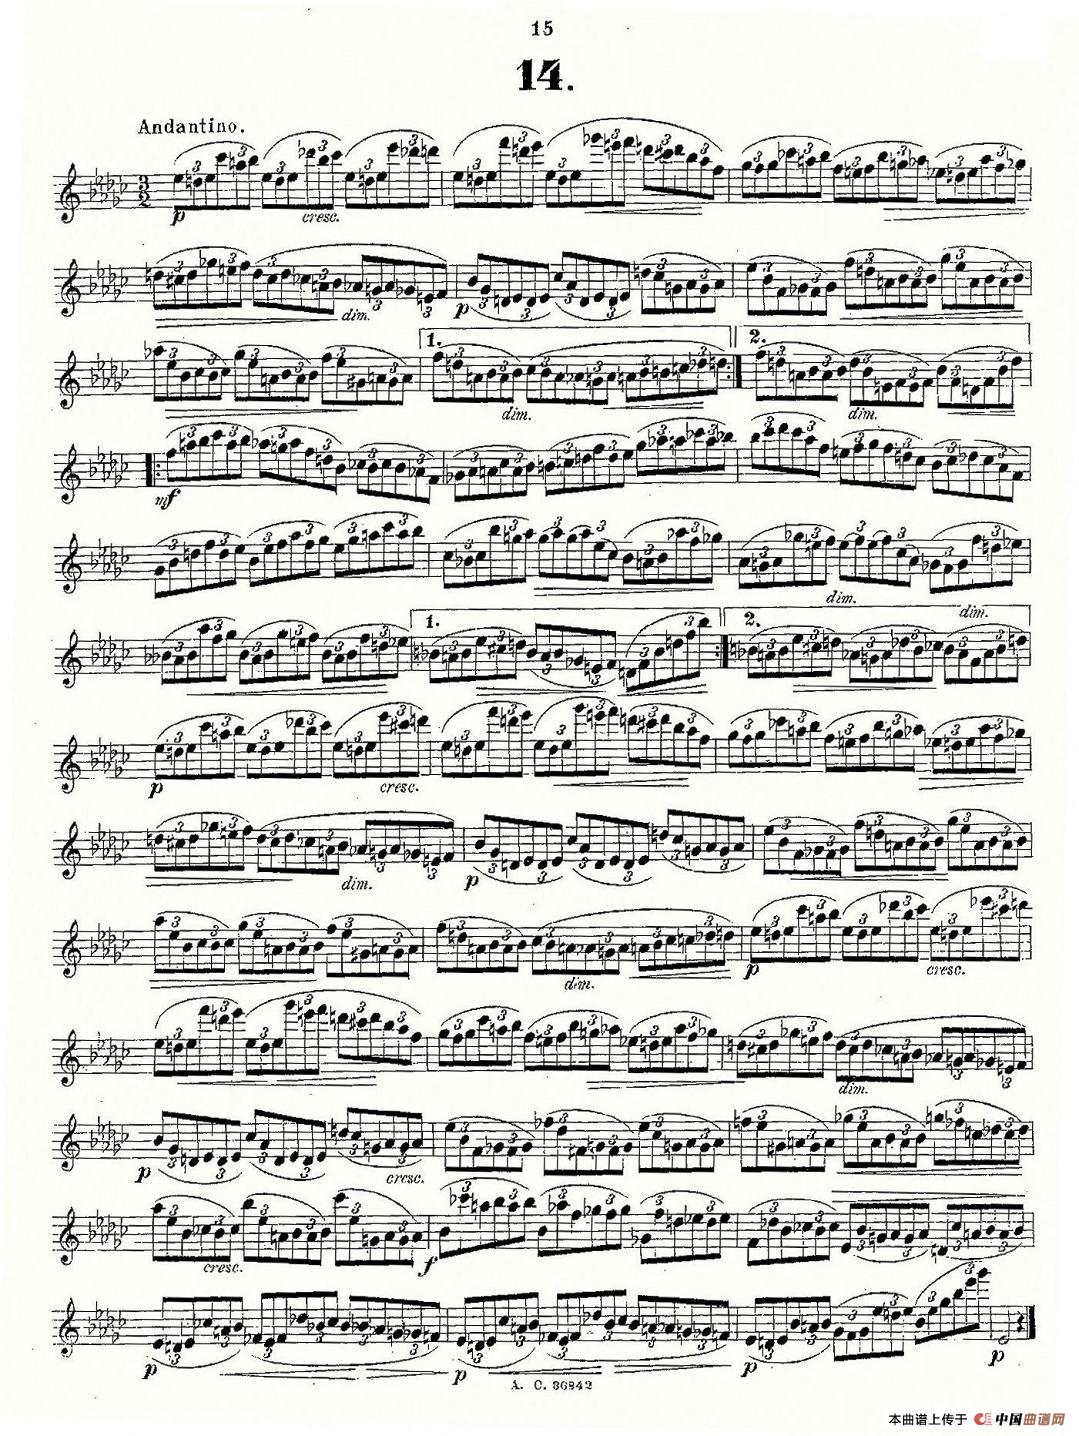 24首长笛练习曲 Op.21 之13-24长笛谱